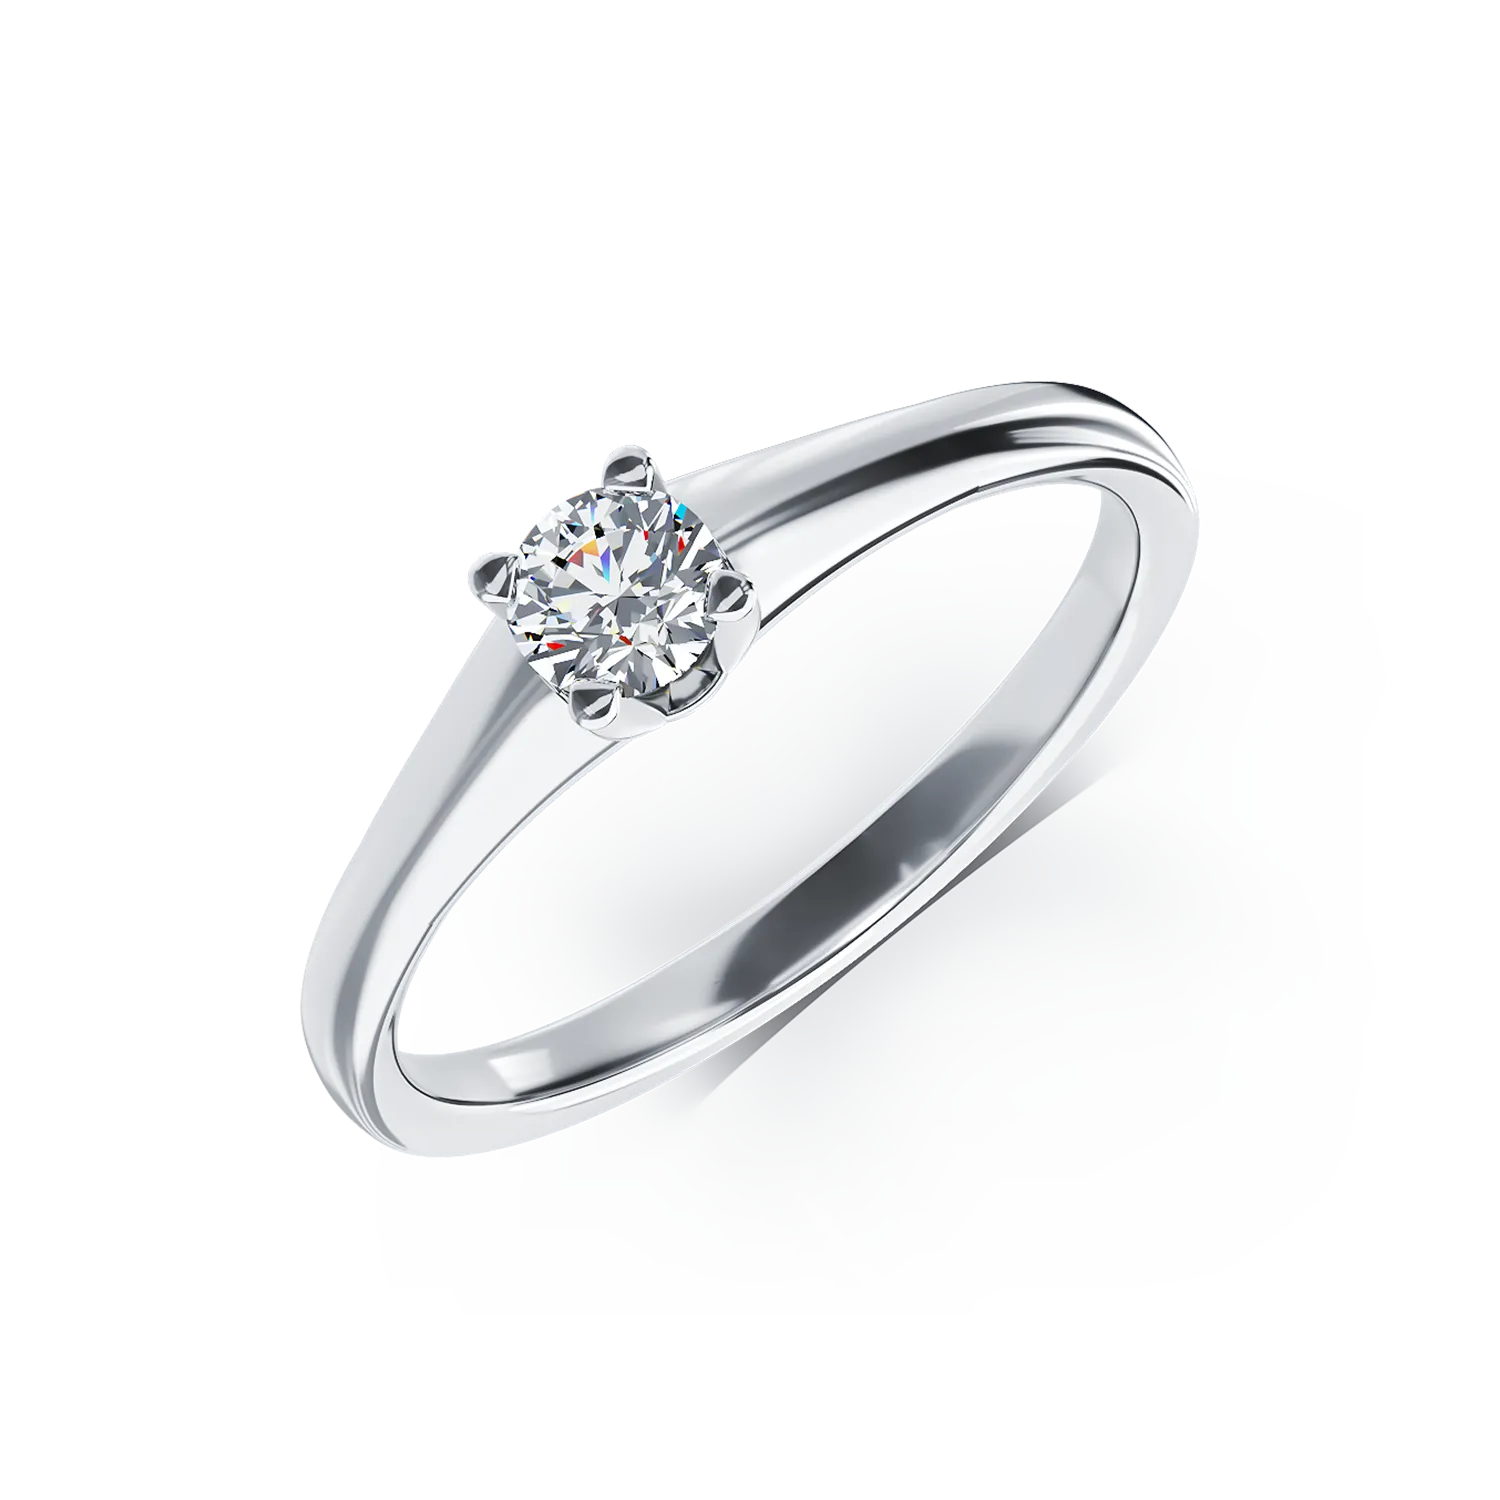 Eljegyzési gyűrű 18K-os fehér aranyból 0,19ct gyémánttal. Gramm: 2,40